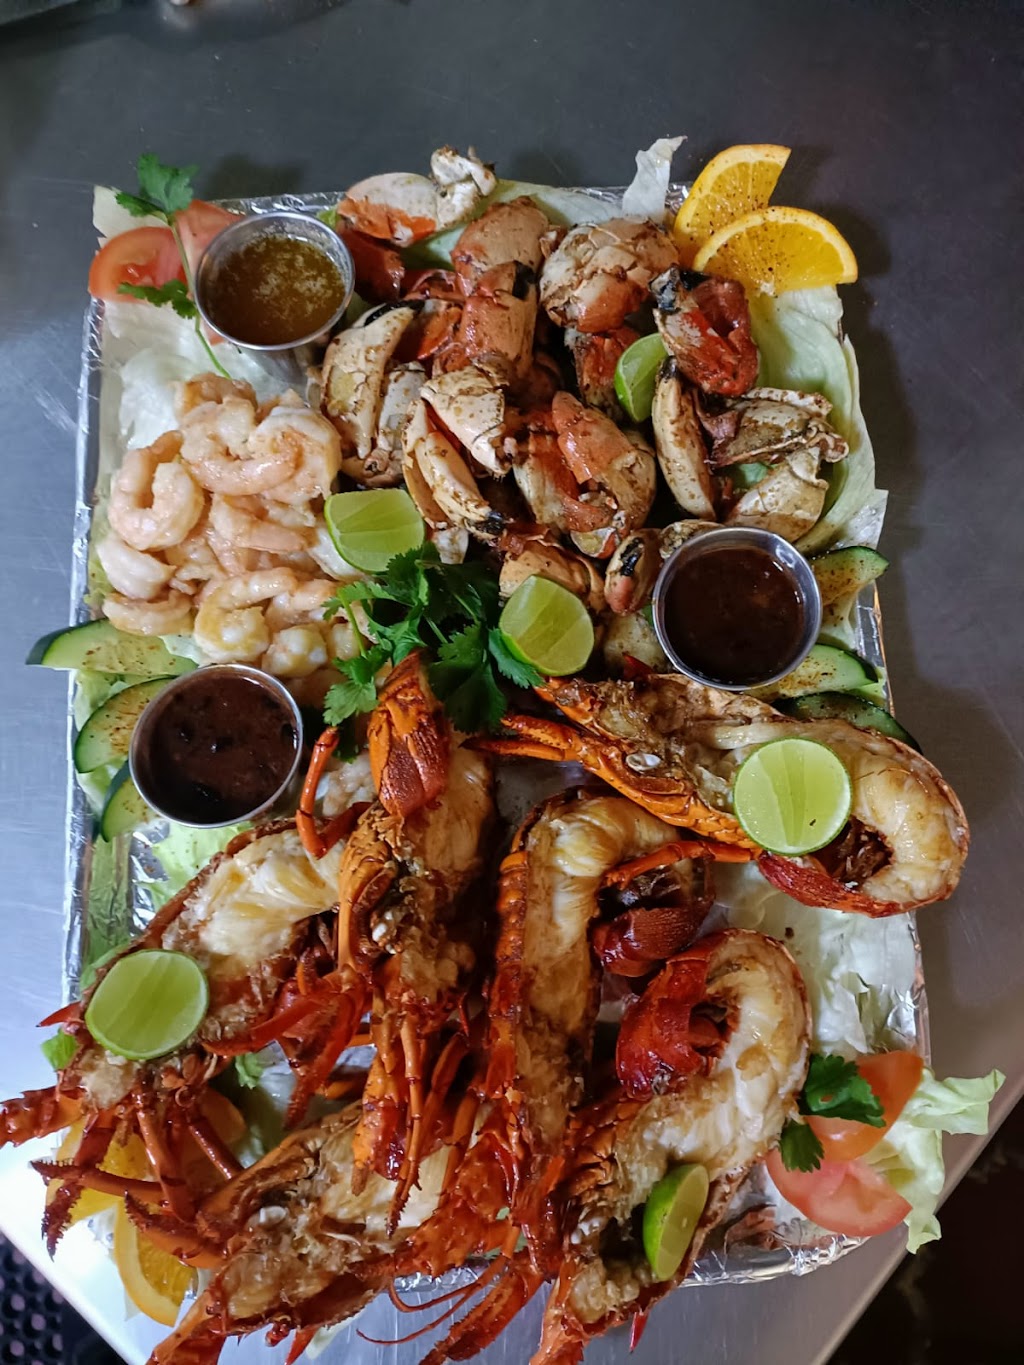 Restaurante mar y tierra | Anzuelo 16, 22716 Puerto Nuevo, B.C., Mexico | Phone: 661 107 2035